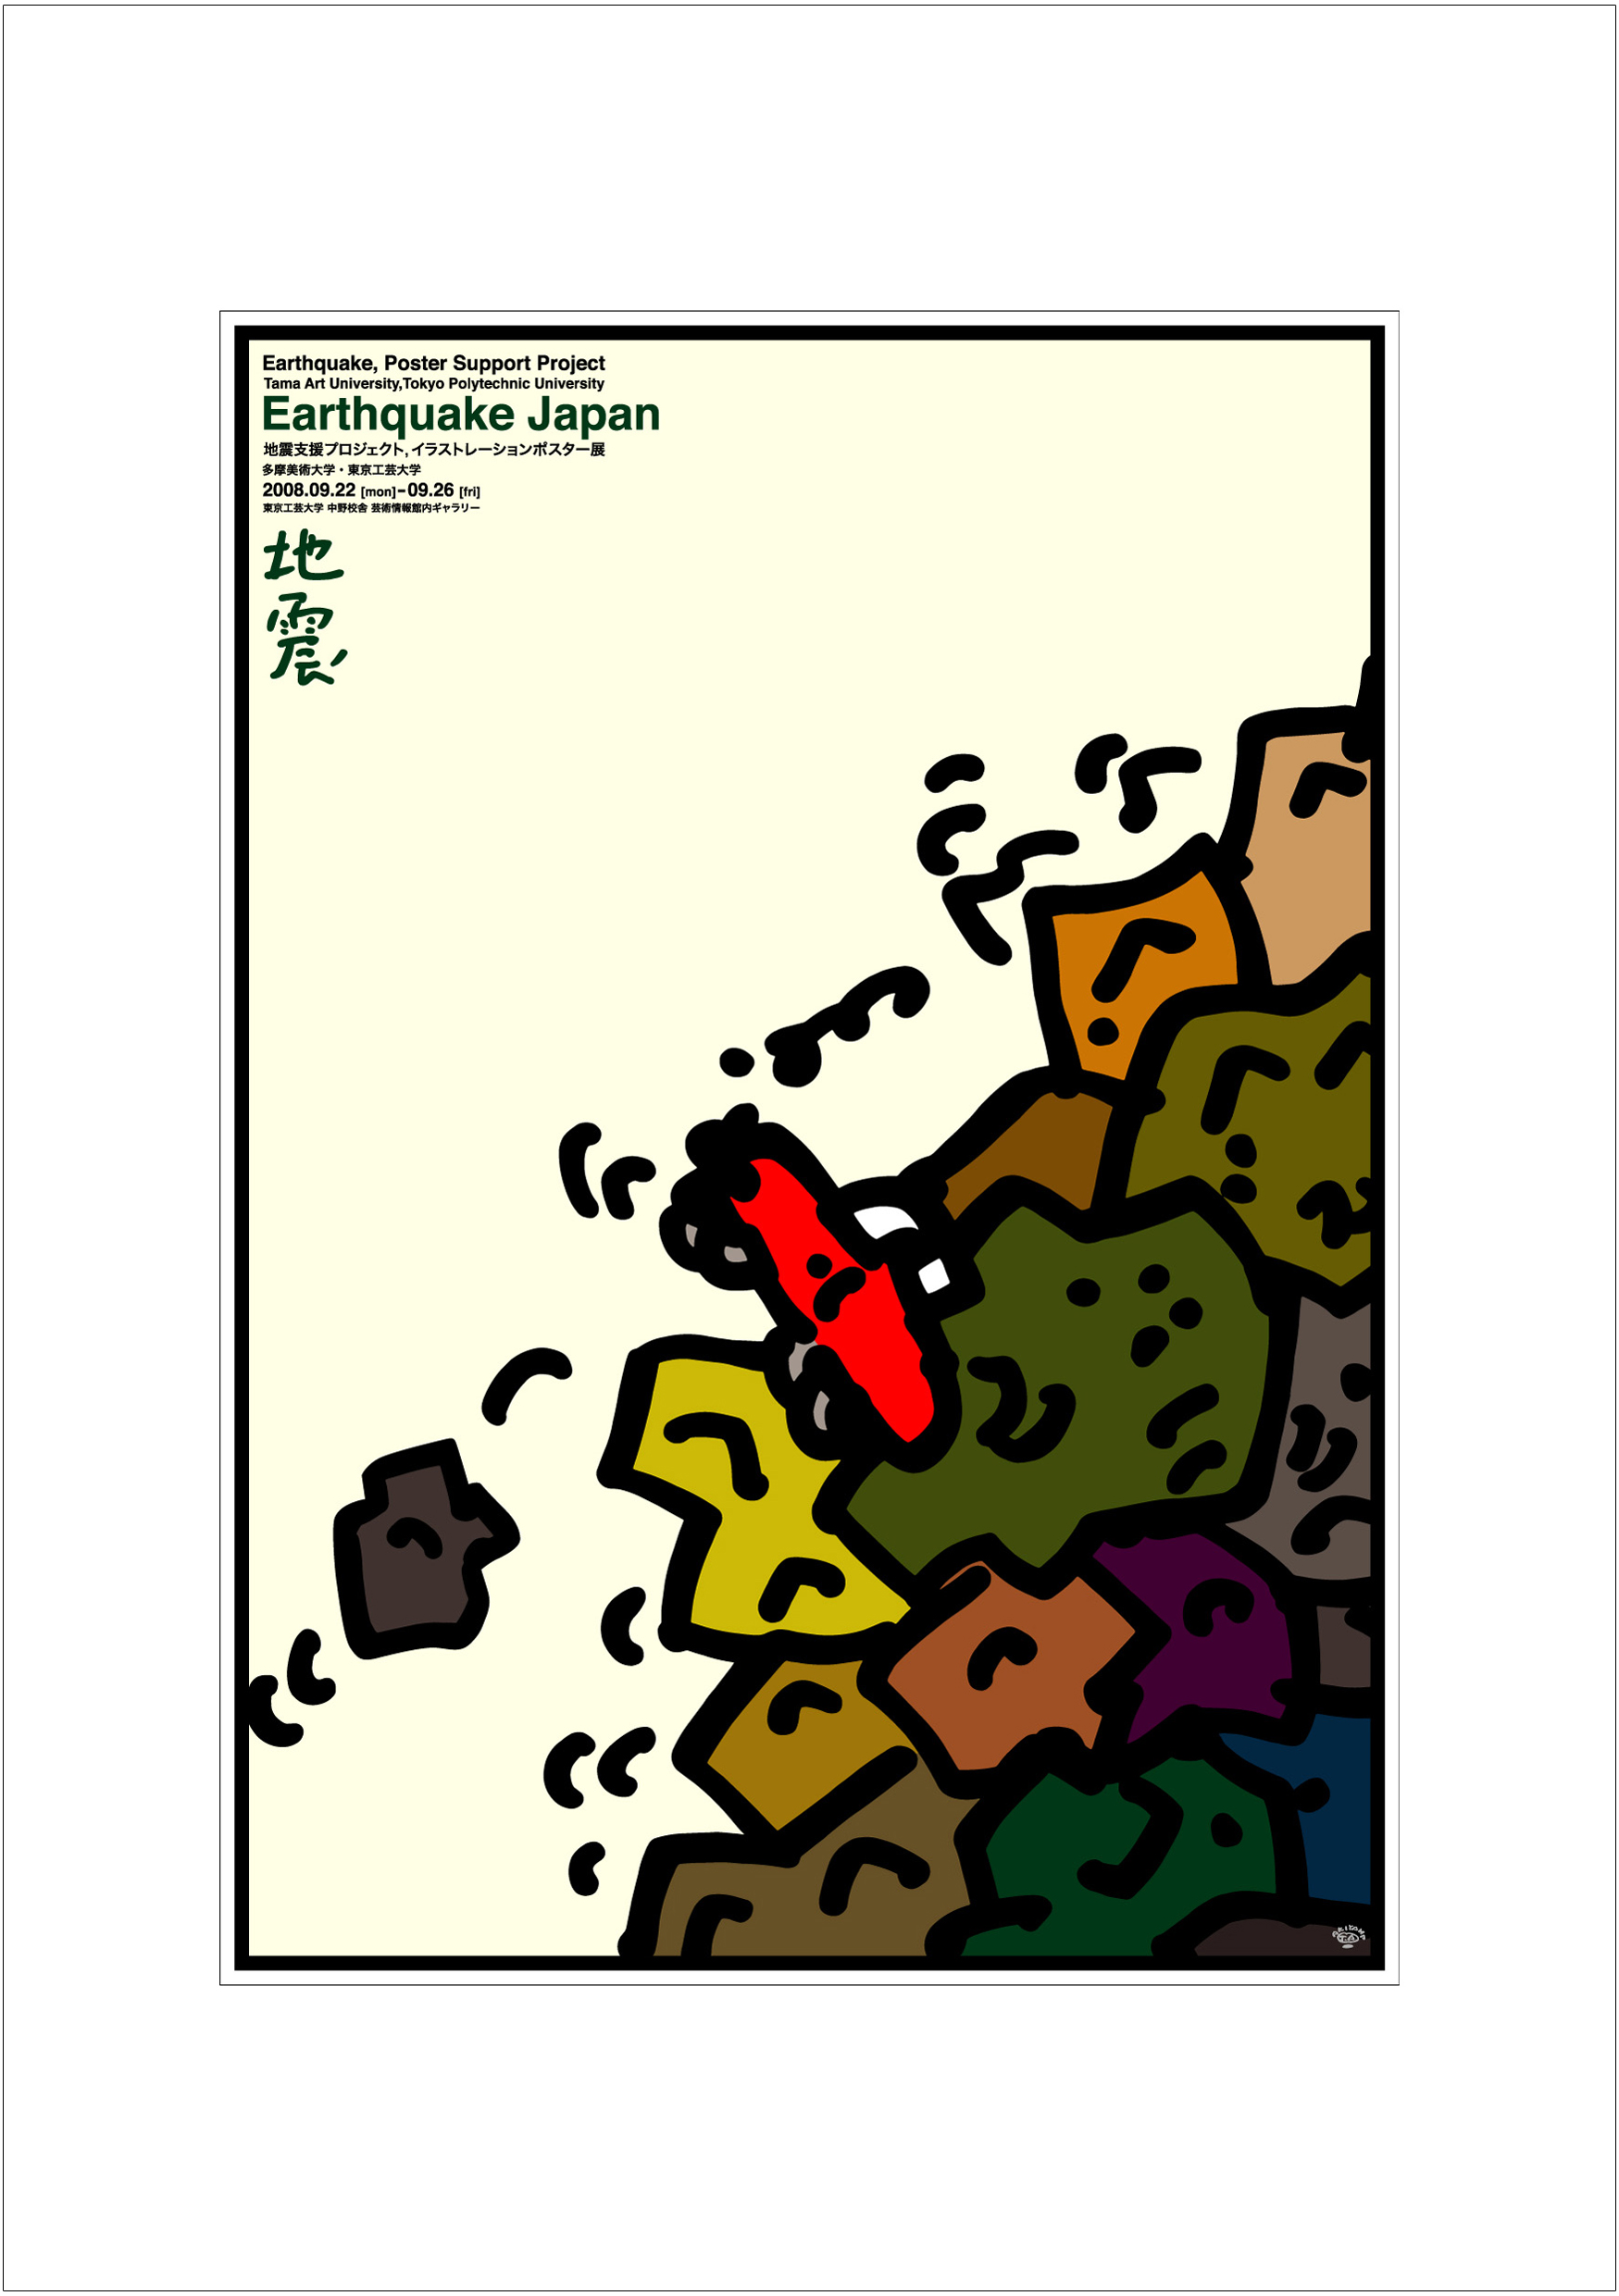 ポスターアーティスト秋山孝が2008年に制作したアートカード「アートカード ポスター 2008 12」